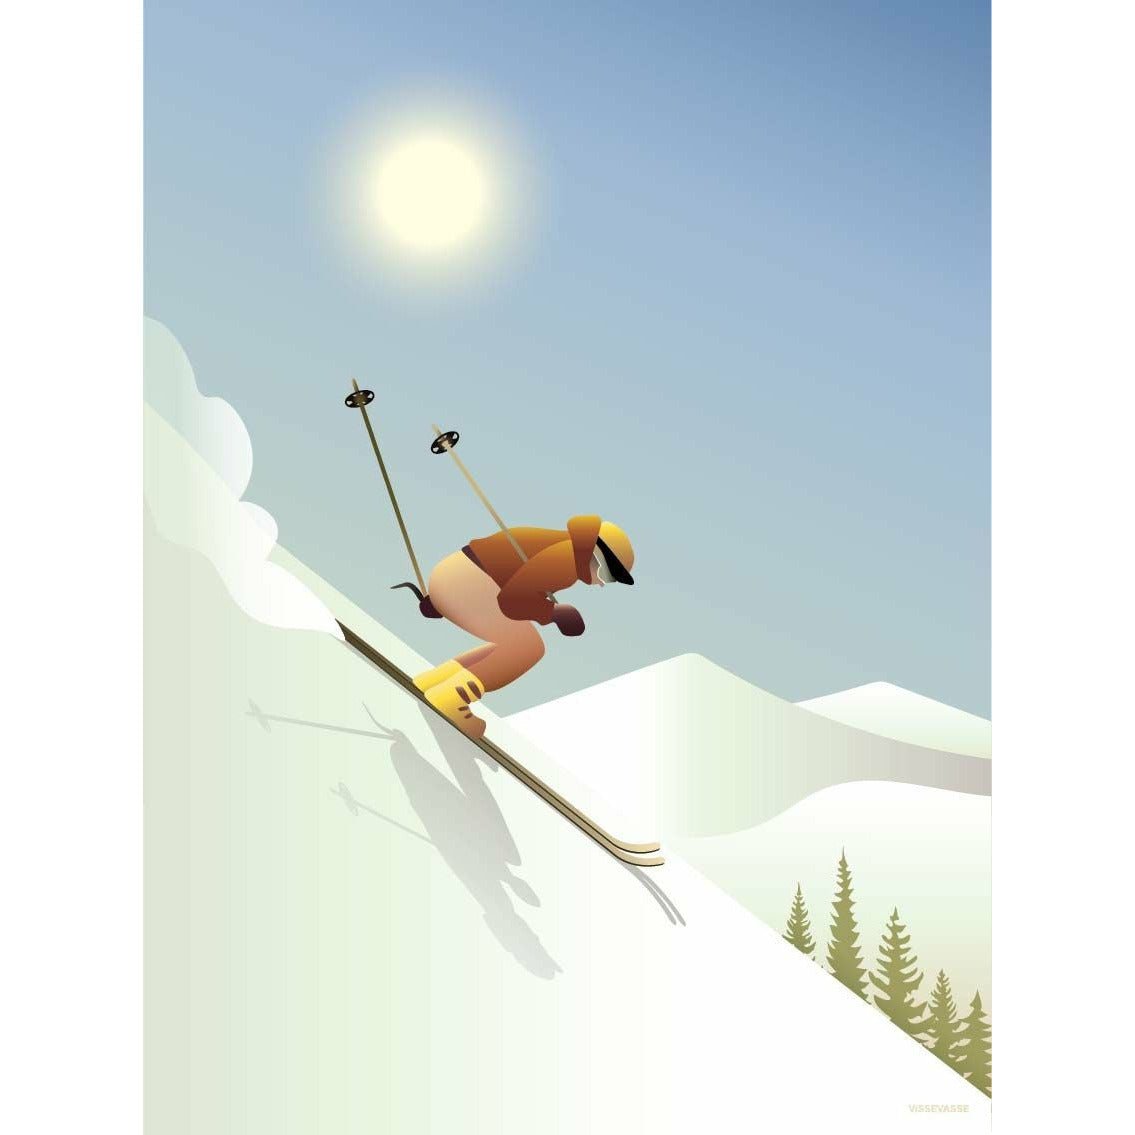 Vissevasse Downhill Skiing veggspjald, 15x21 cm